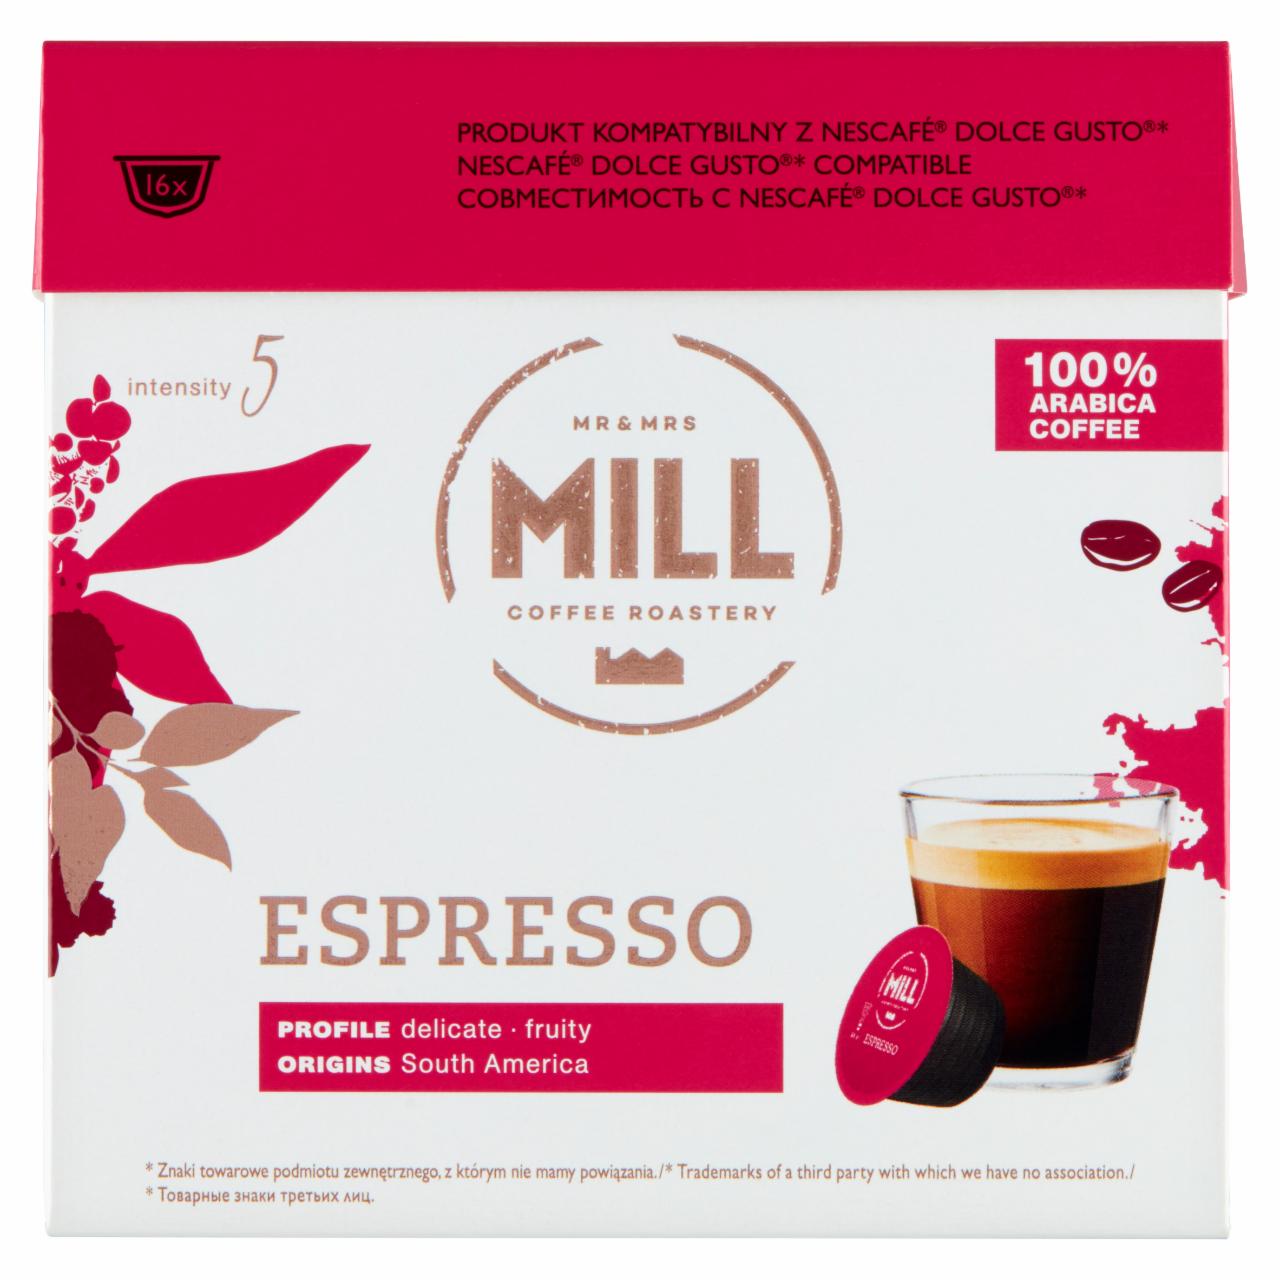 Zdjęcia - Mr & Mrs Mill Espresso Kawa w kapsułkach 96 g (16 x 6 g)